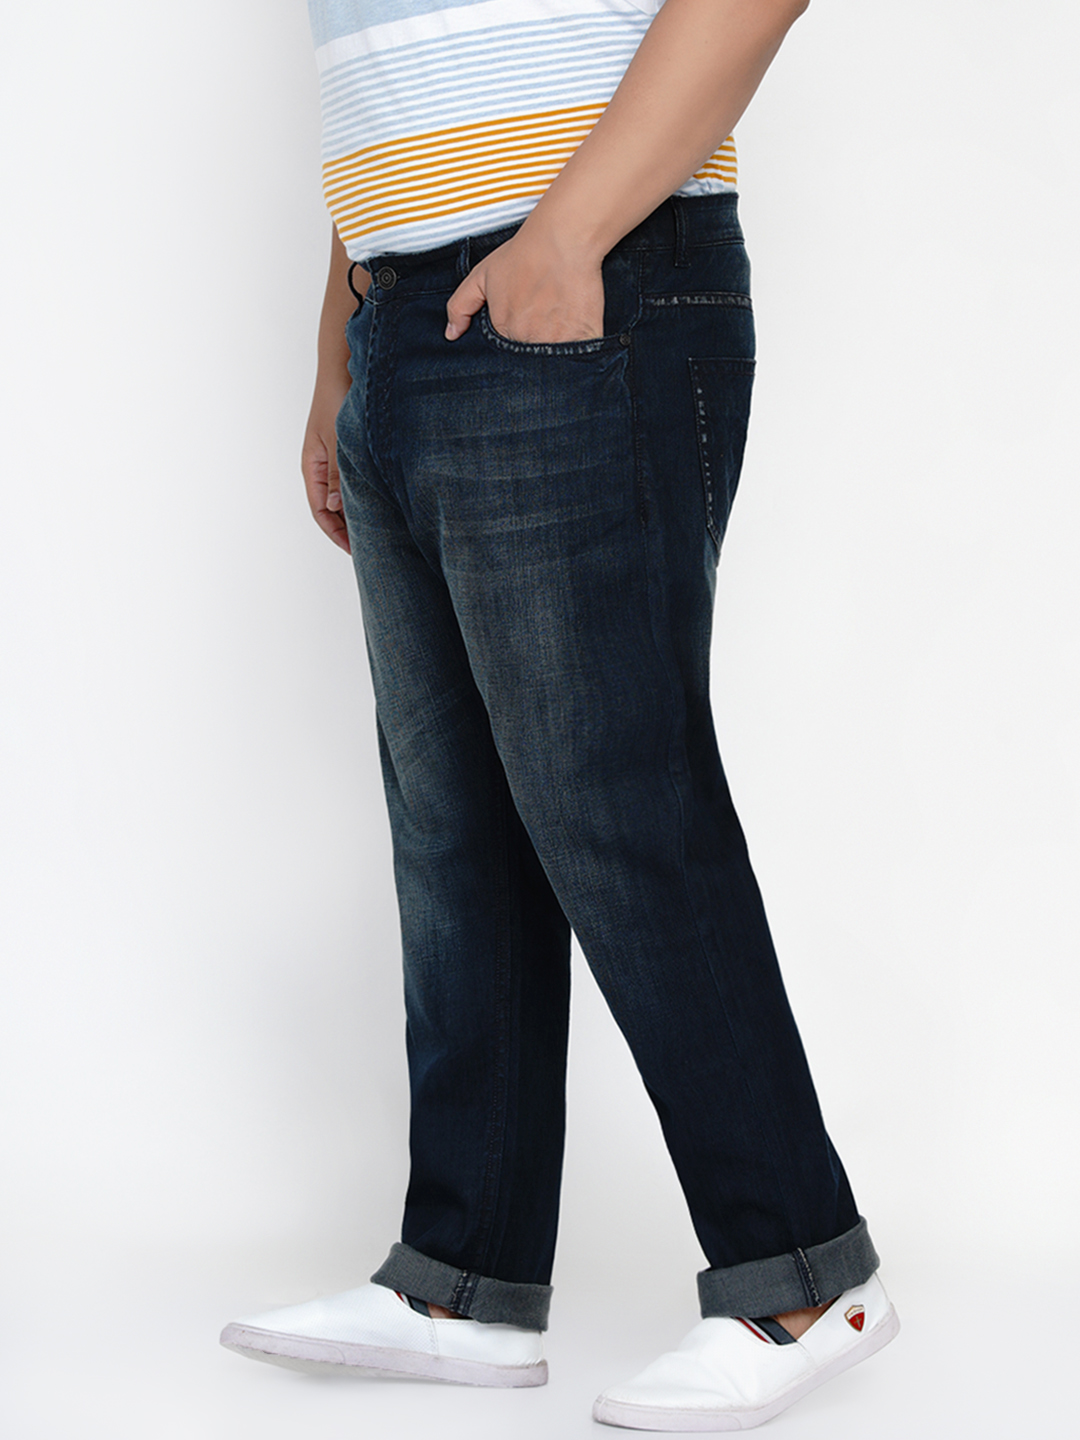 bottomwear/jeans/JPJ2560/jpj2560-4.jpg